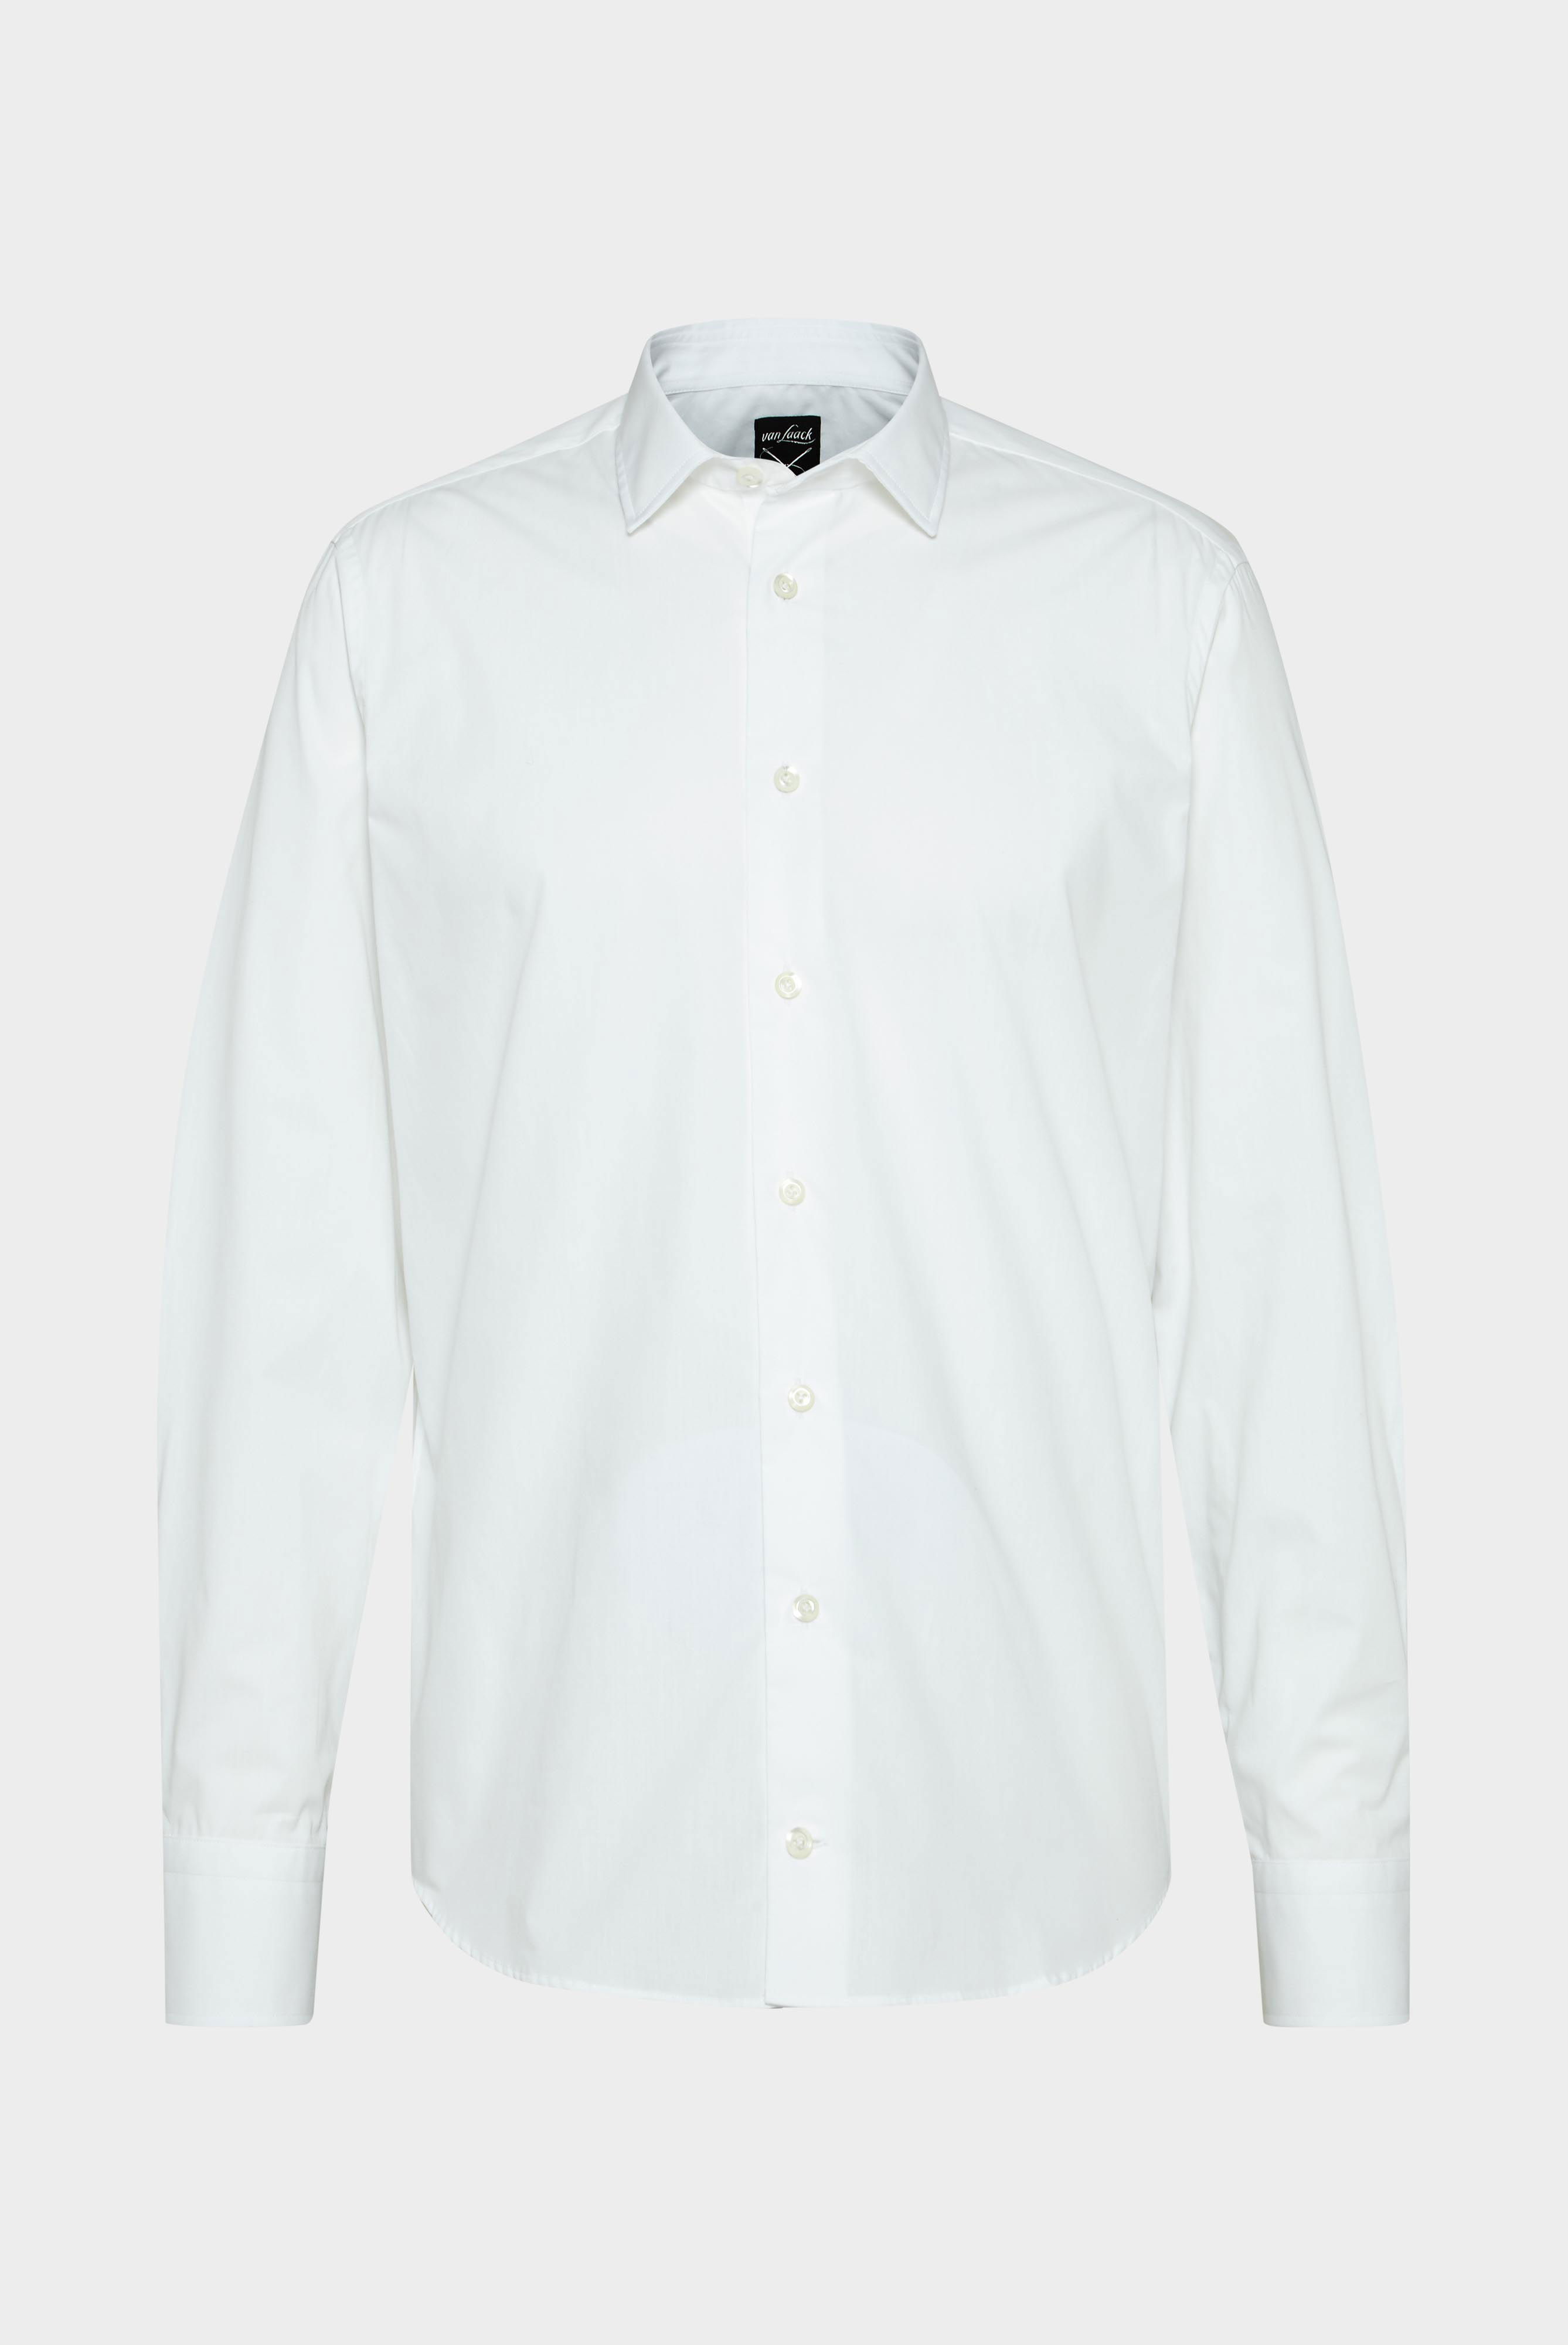 Bügelleichte Hemden+Bügelfreies Hemd Tailor Fit+20.3281.NV.150098.000.42